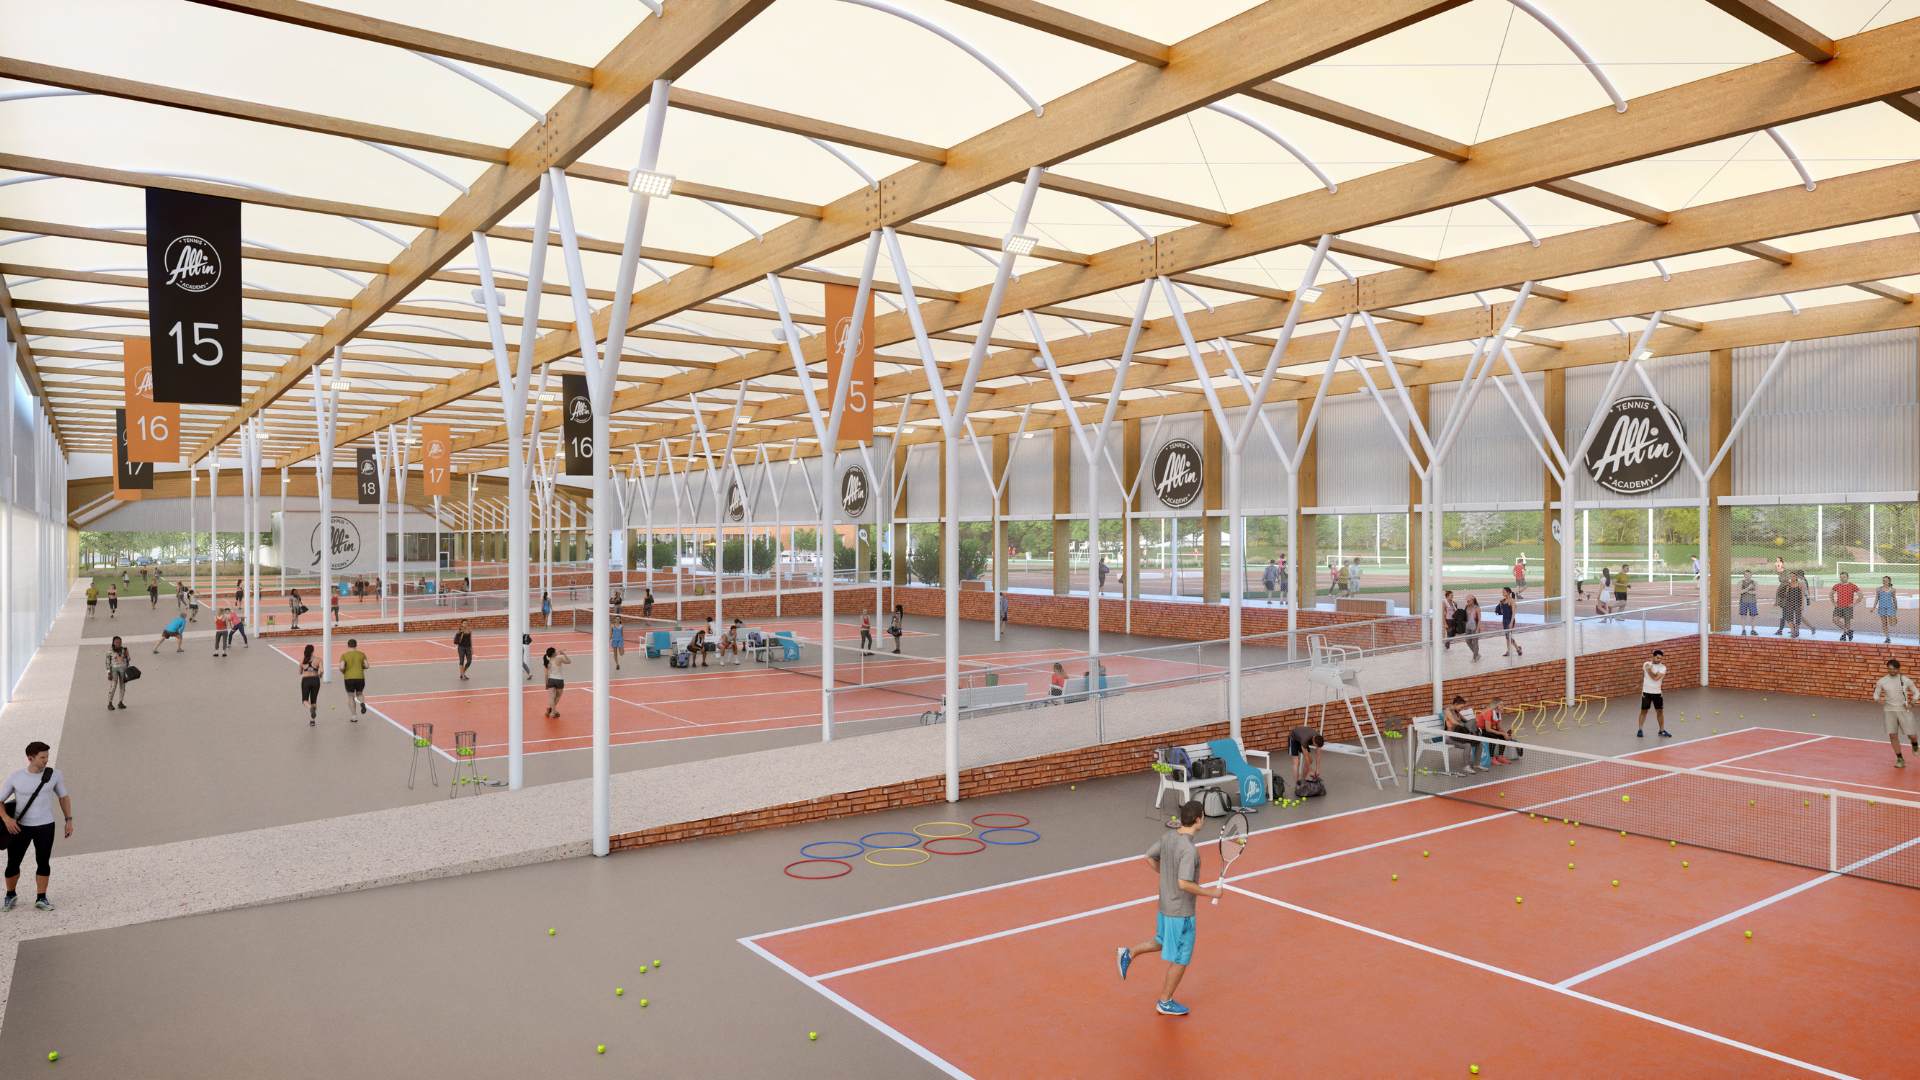 Architecture sportive - Stade modélisé en 3D par notre studio 3D